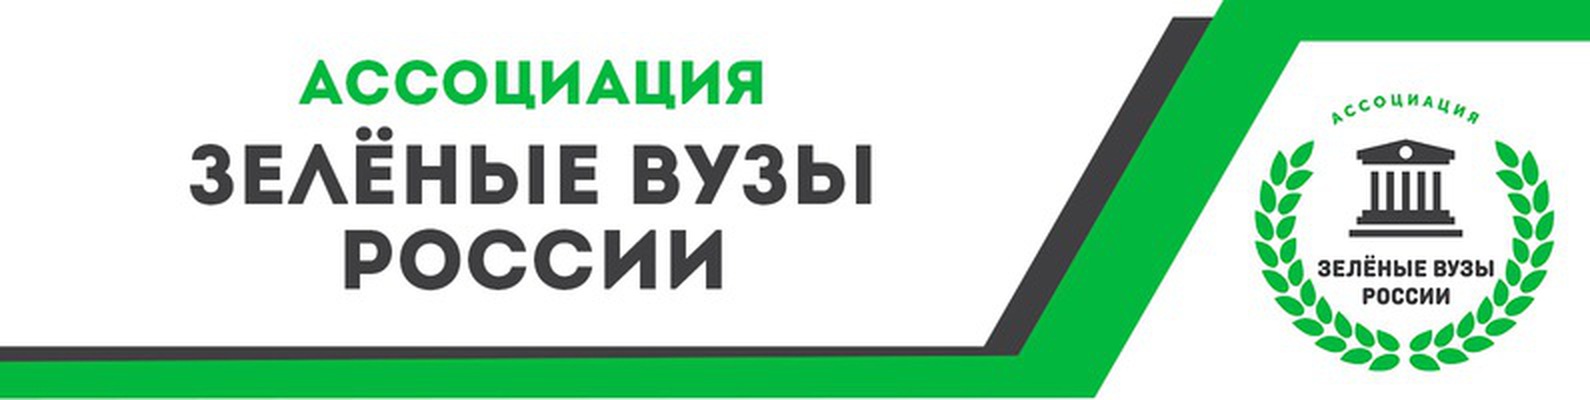 23-25 марта в Москве состоится слет Ассоциации «зеленых» вузов России - фото 1